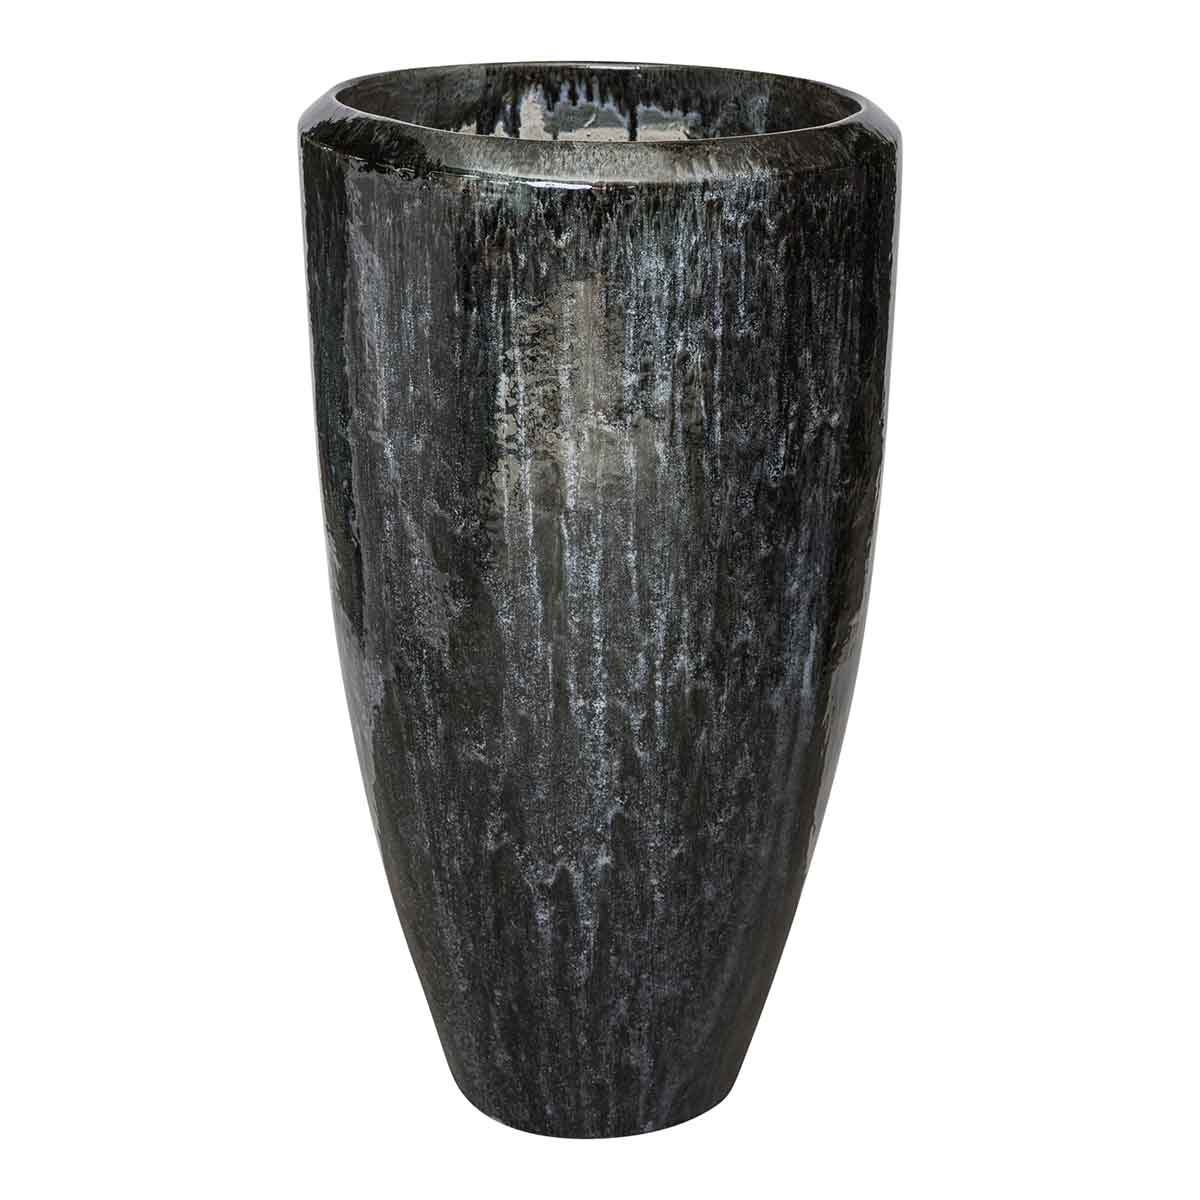 Ptmd flaxx ronde pot de fleur - h90 x ø48 cm - céramique vitrée - gris